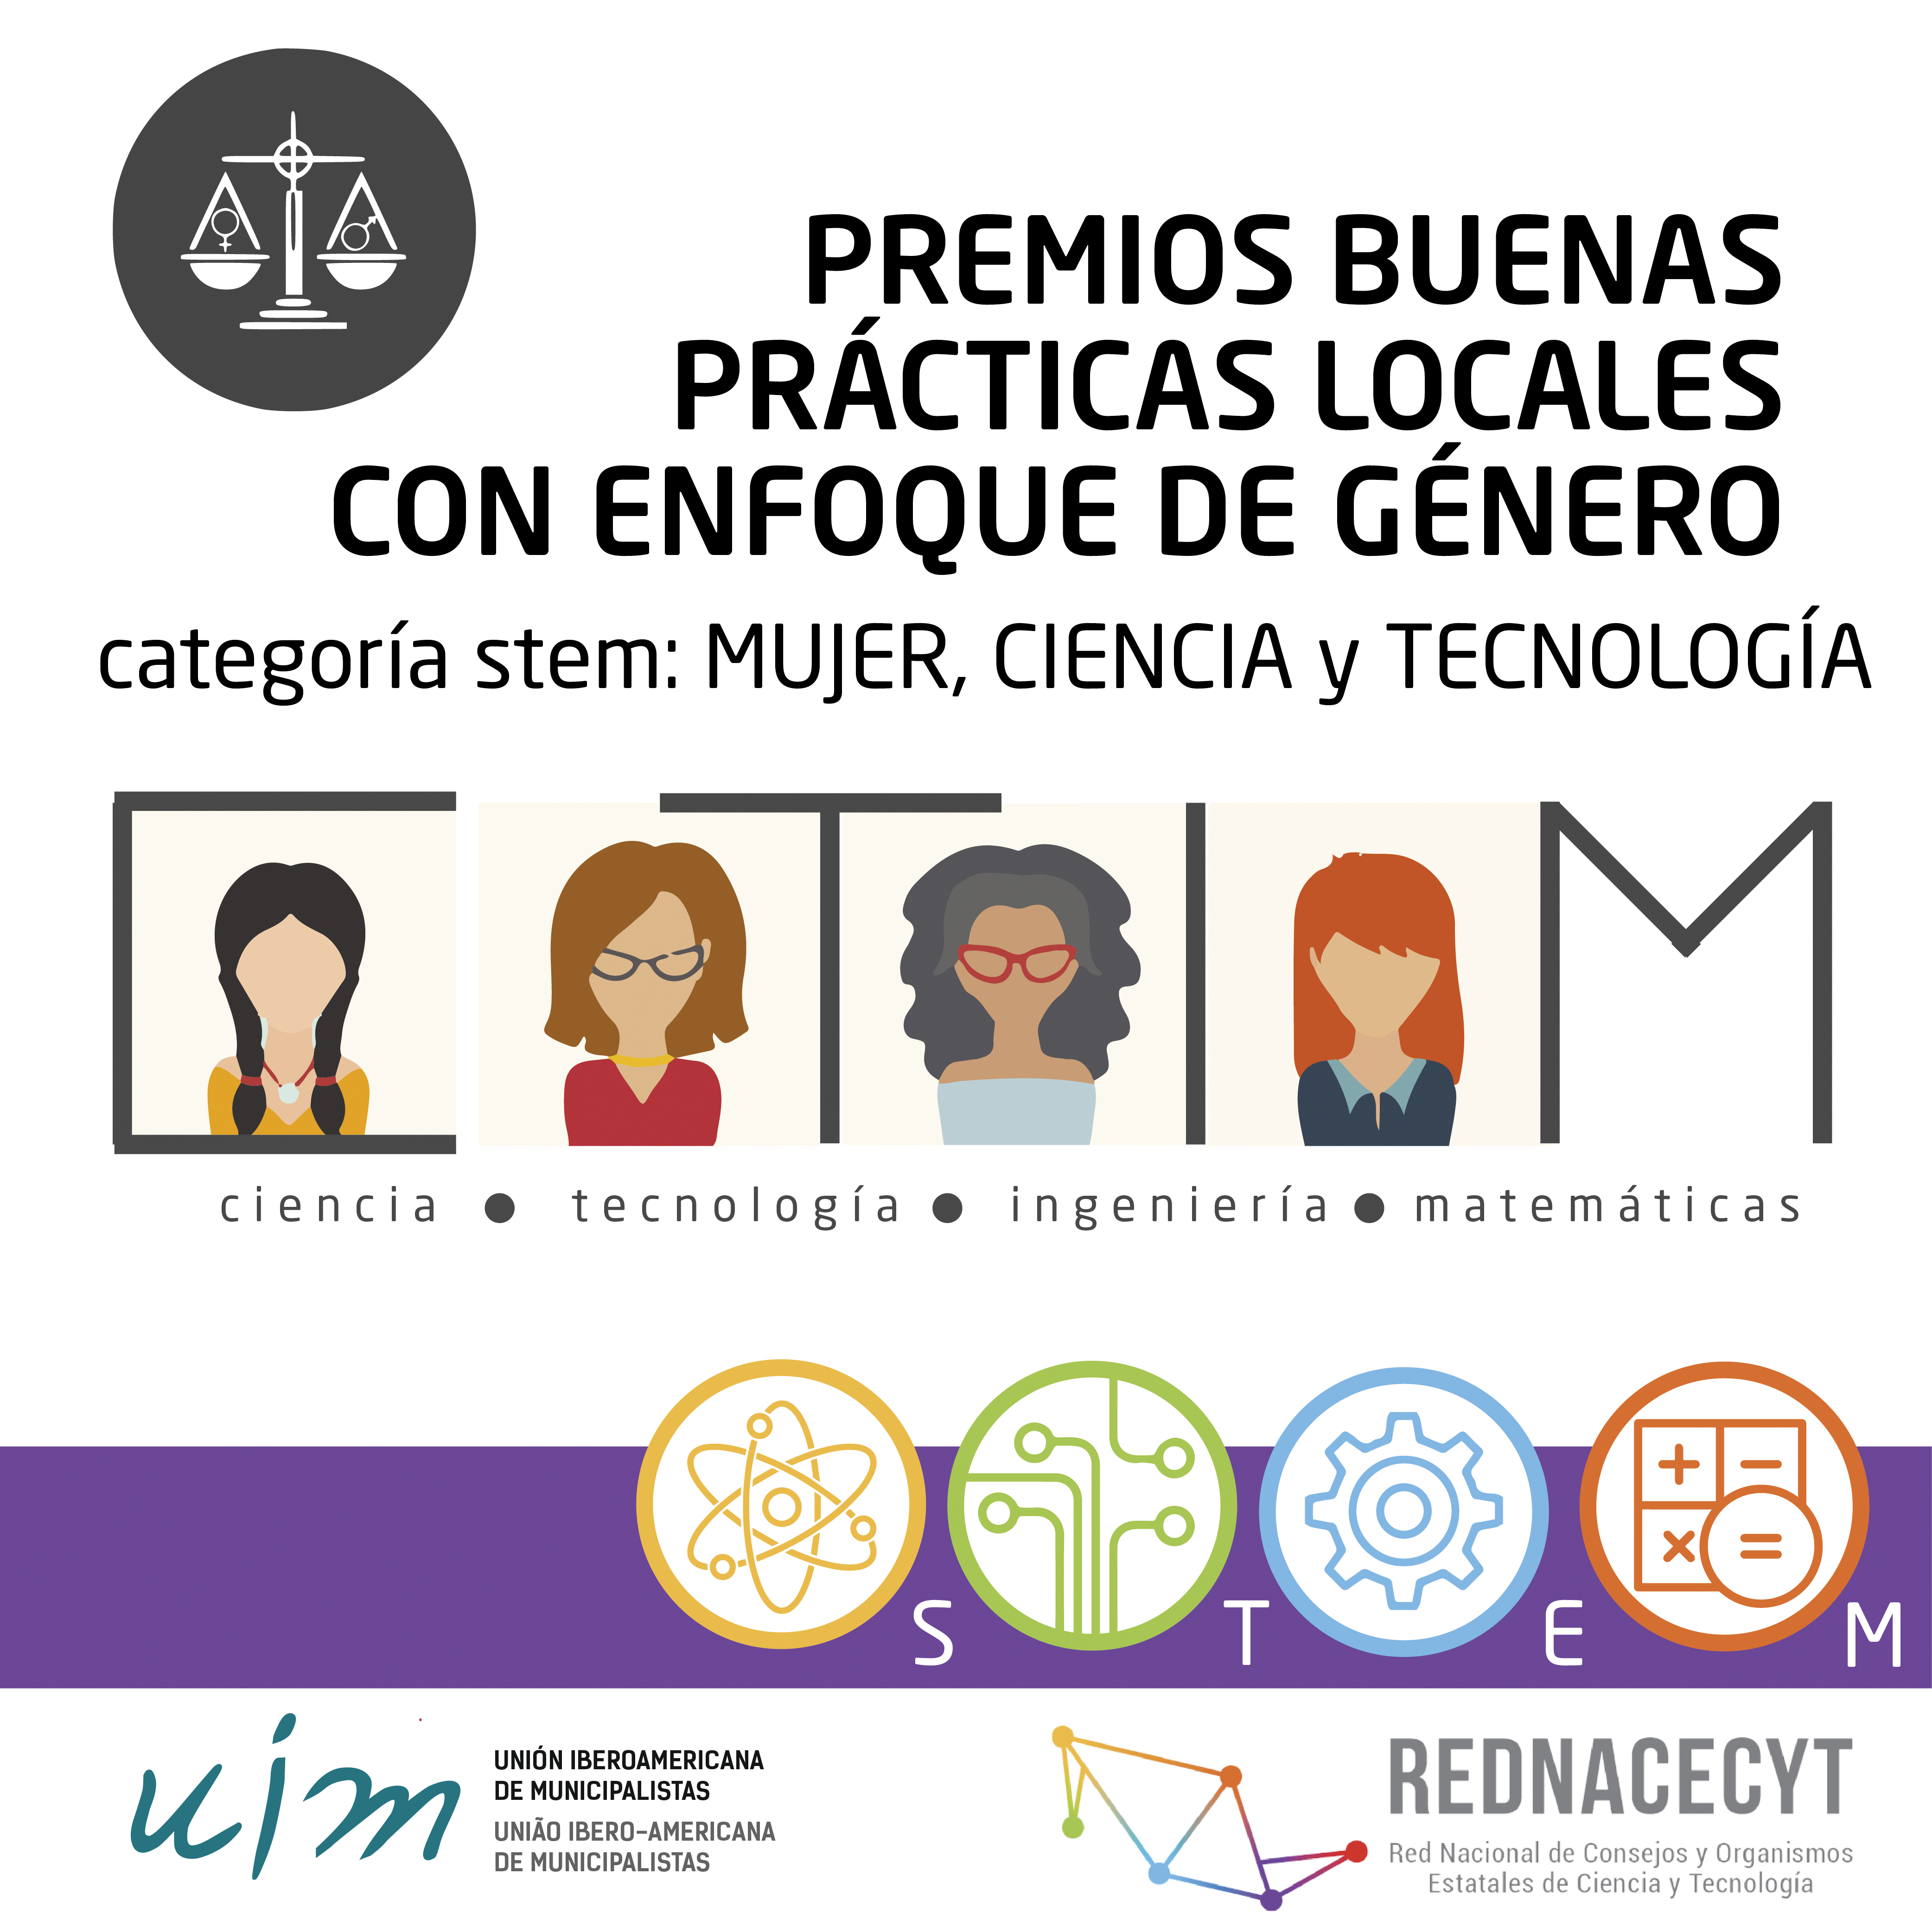 La UIM convoca a postularse a los Premios de Buenas Prácticas Locales en Género